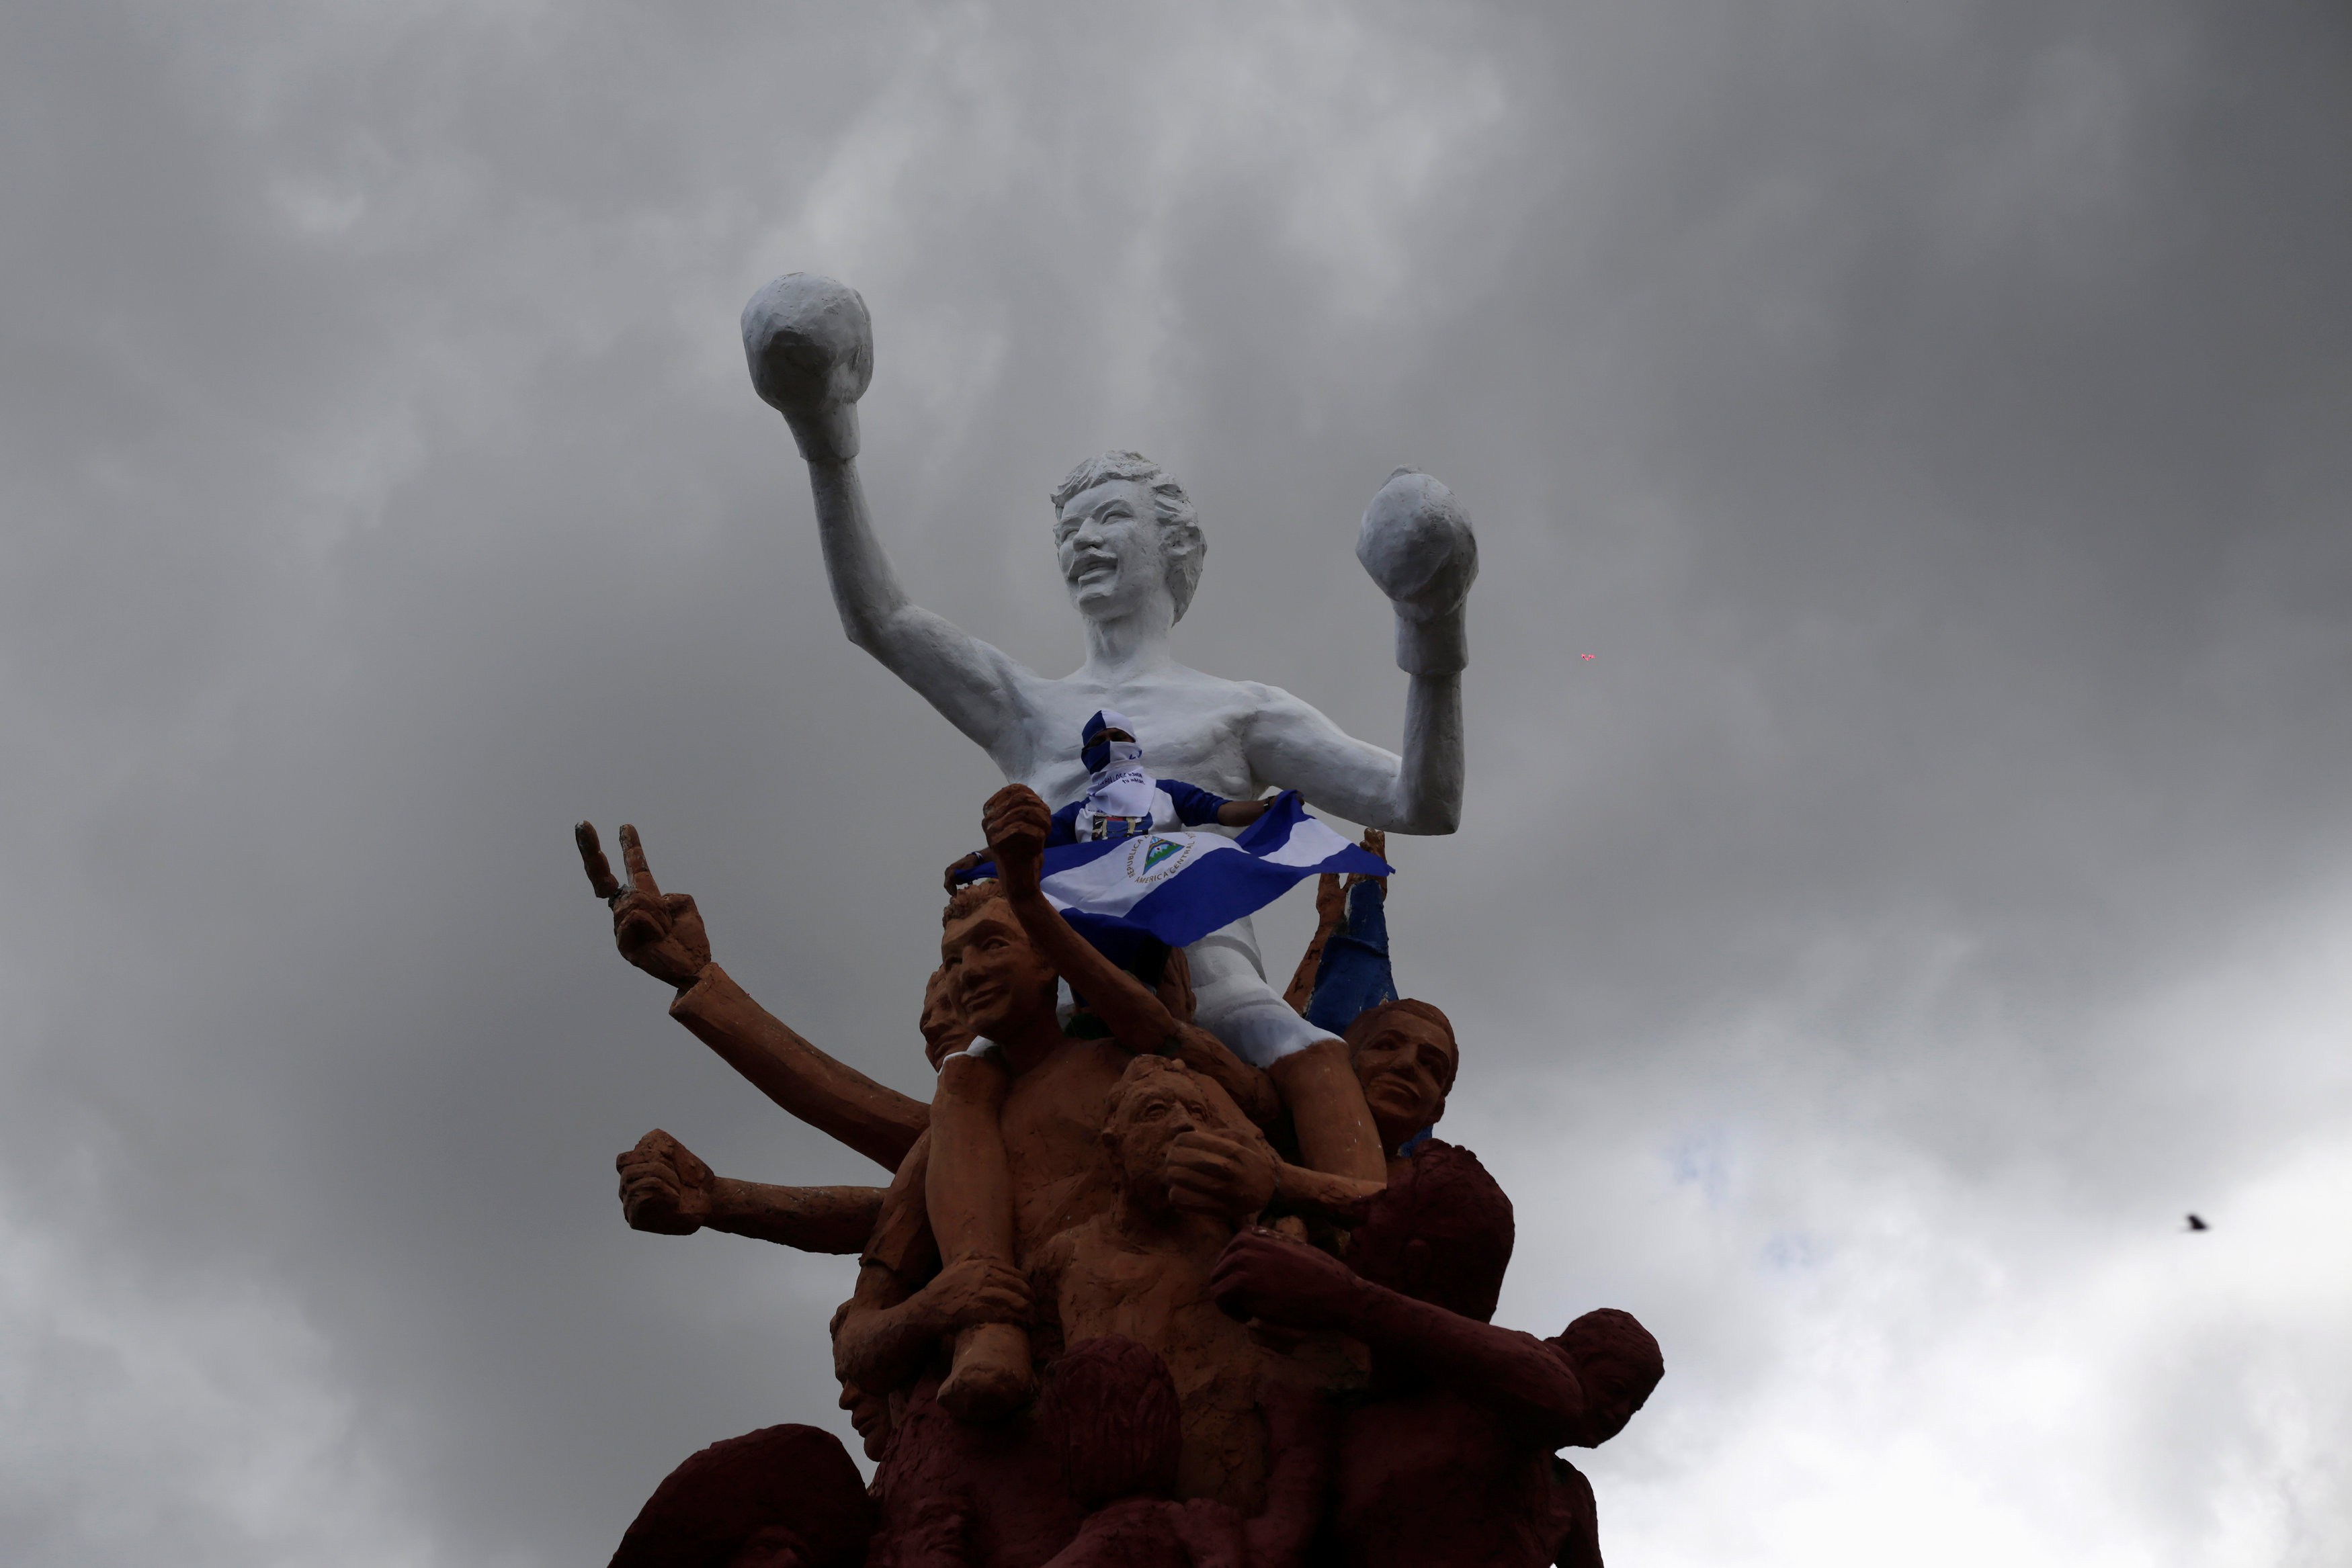 Huele a muerte… Al mejor estilo de Nicolás, Ortega convoca a contramarcha anti oposición